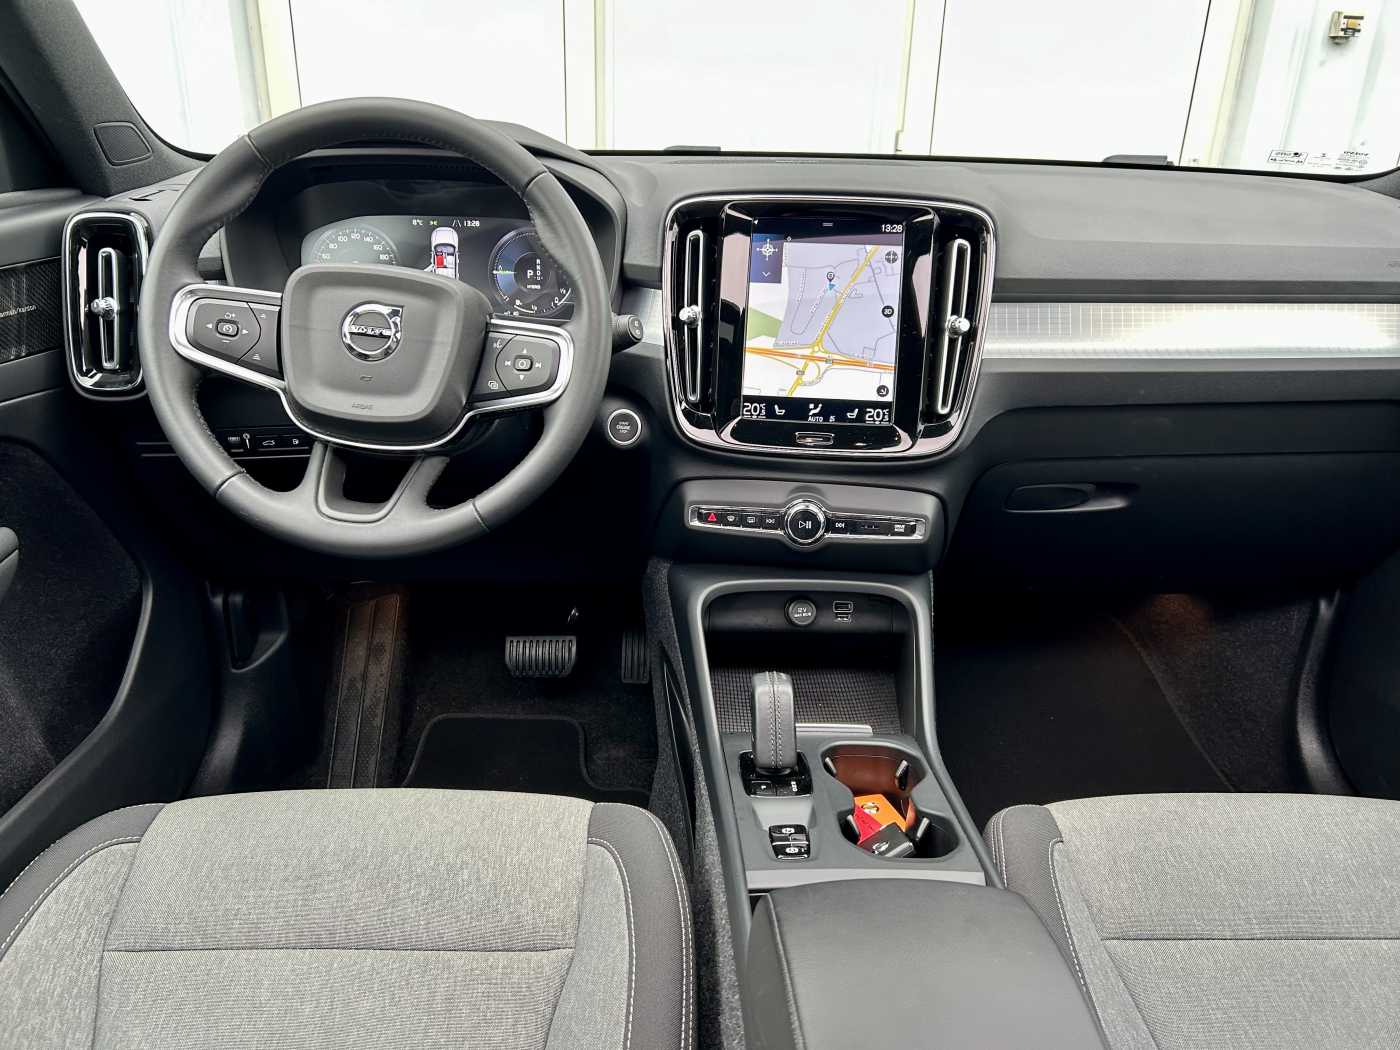 Lacom Volvo - XC40 T5 Plug-in R-Design Expr/DriverAssist/Pano/360°cam